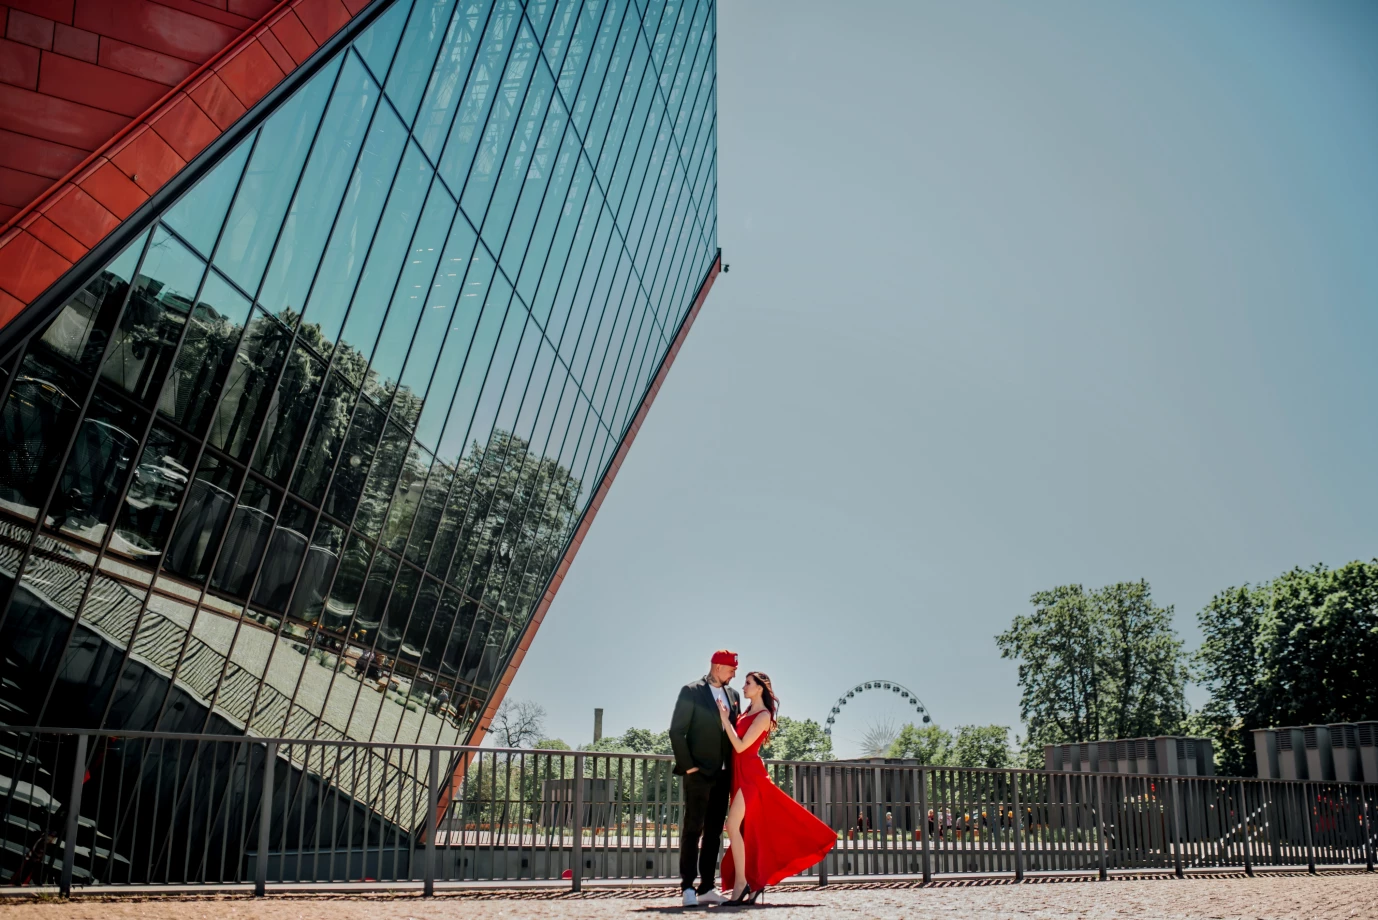 fotograf gdansk rysia-art portfolio zdjecia slubne inspiracje wesele plener slubny sesja slubna